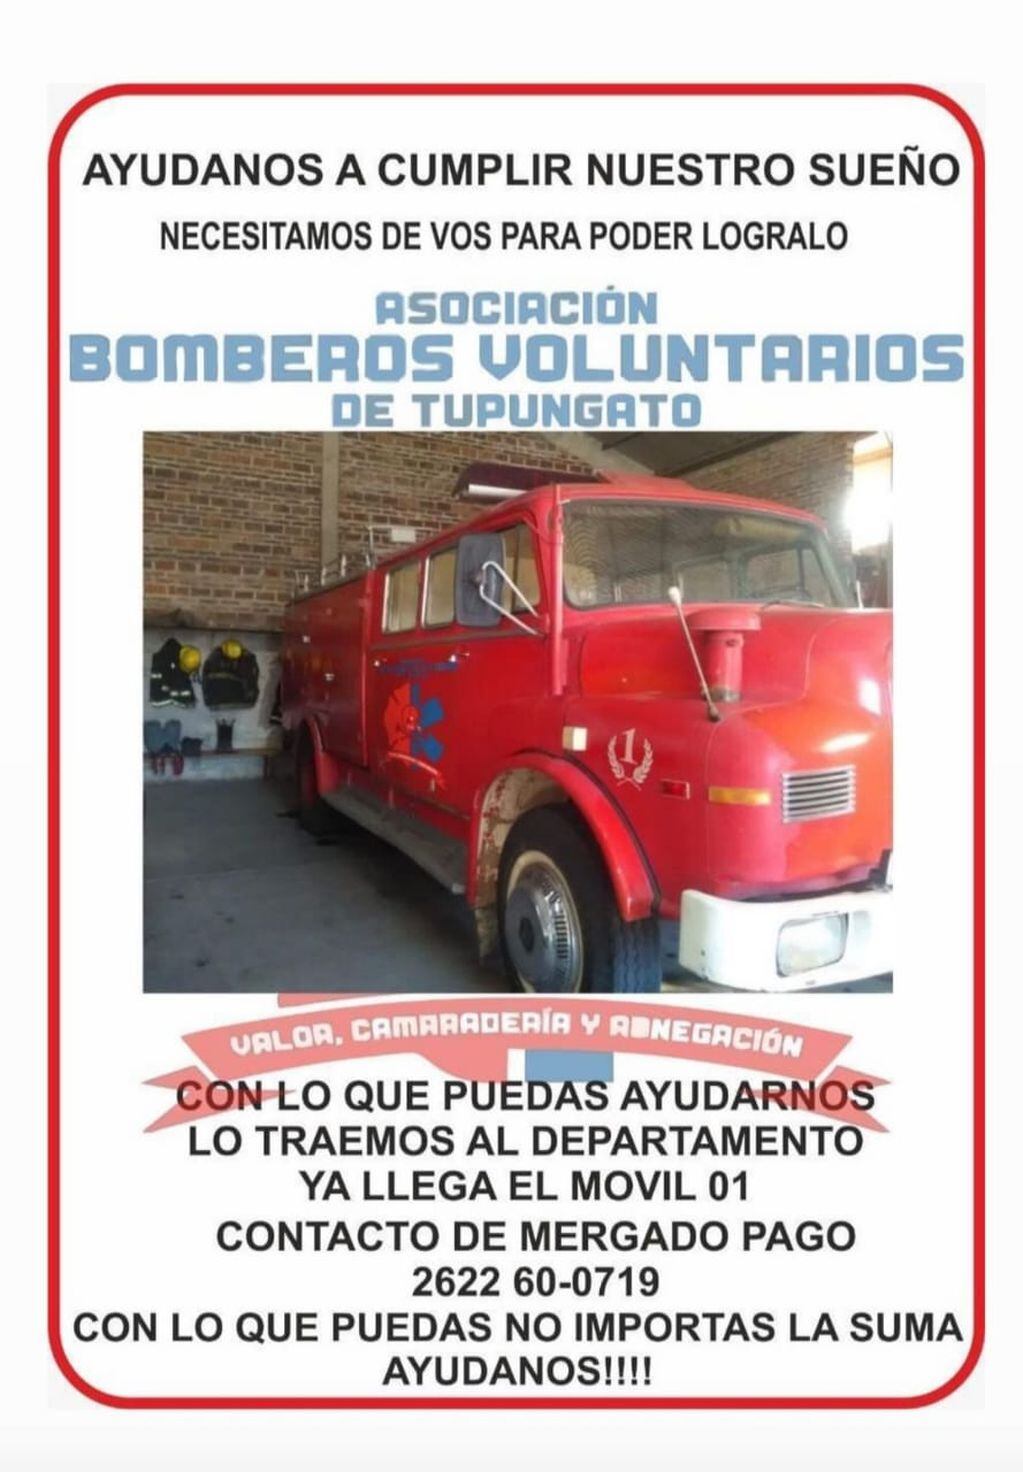 Los Bomberos Voluntarios de Tupungato necesitan de nuestra ayuda para buscar un camión cisterna.